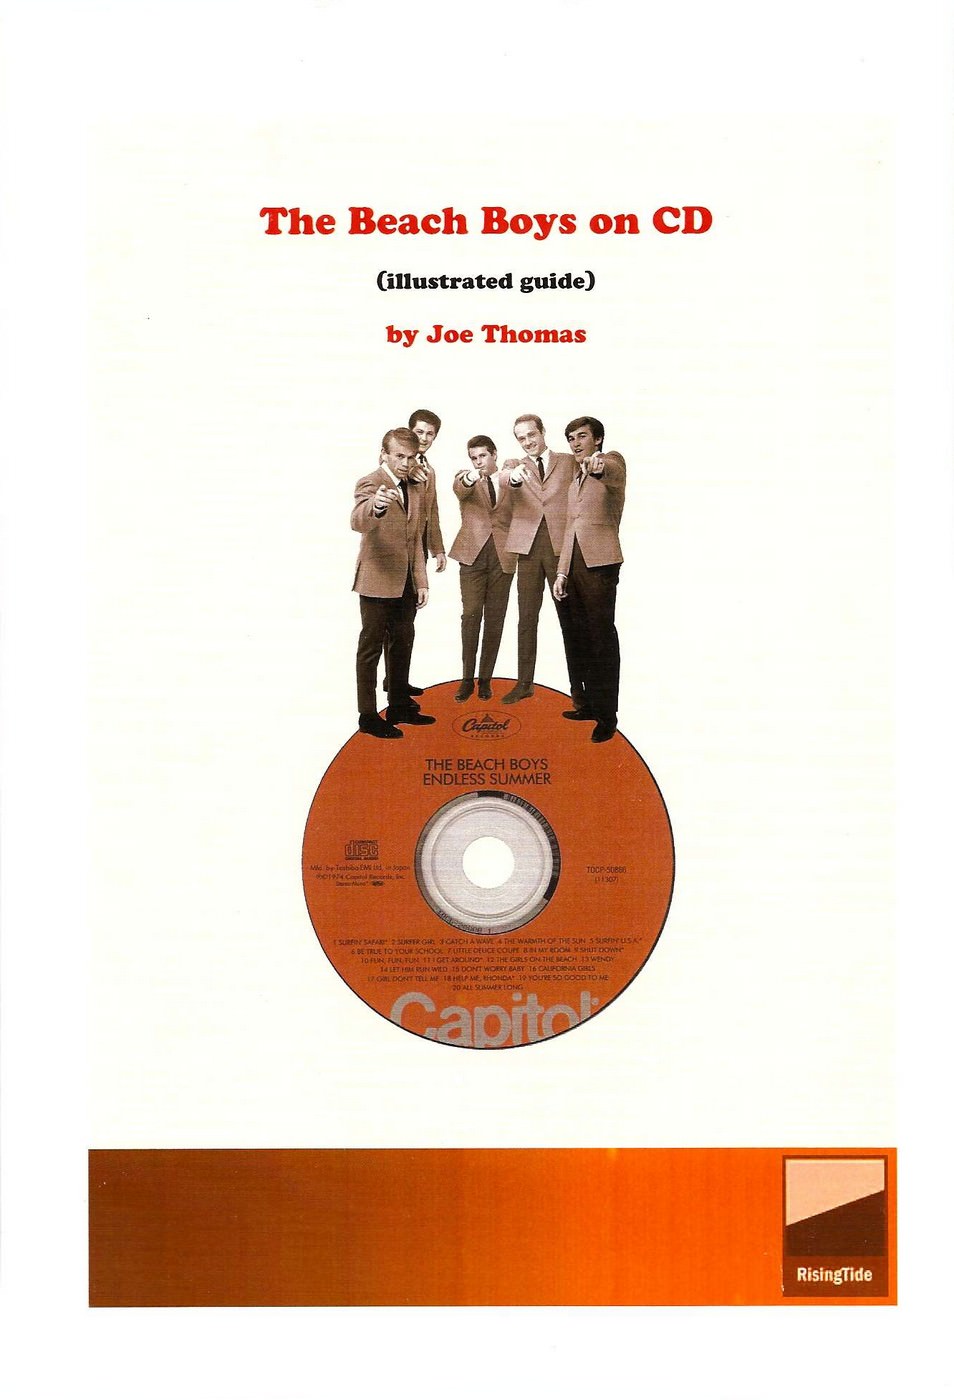 The Beach Boys on CD cover